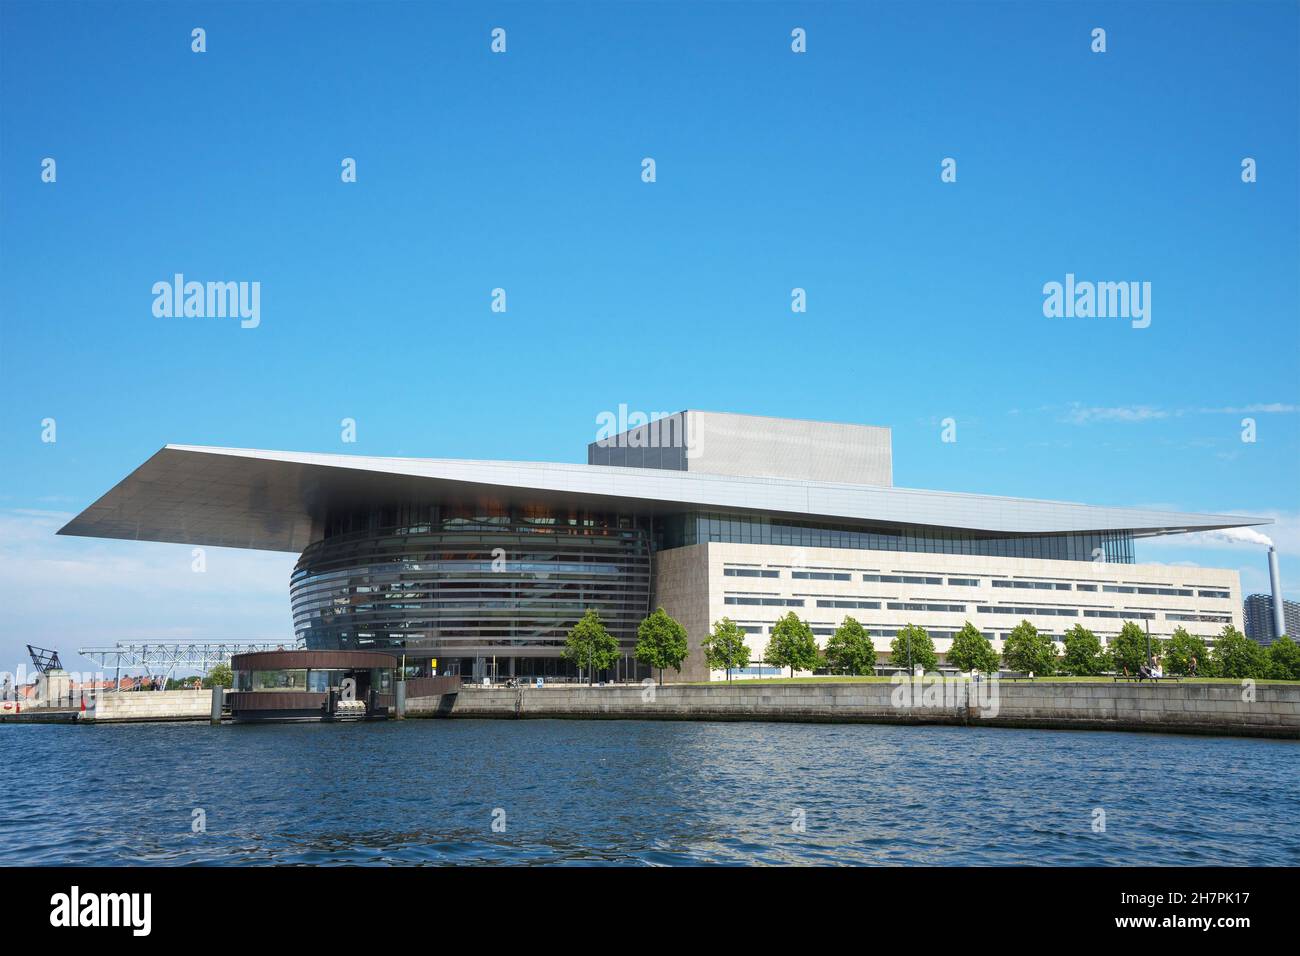 L'Opéra de Copenhague est l'opéra national du Danemark.Il est situé sur l'île de Holmen dans le centre de Copenhague. Banque D'Images